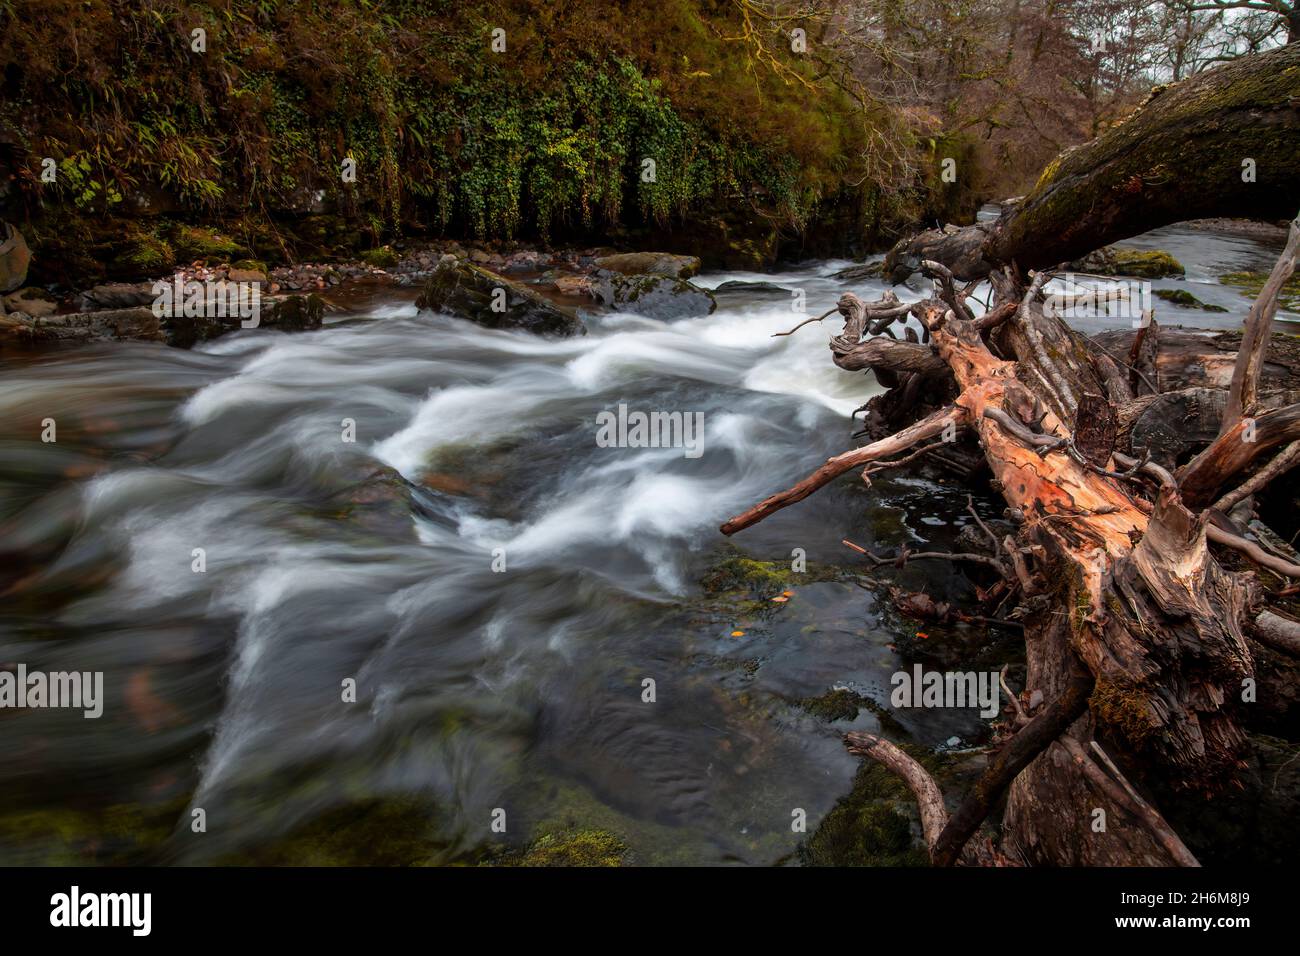 Une pile d'arbres tombés s'est emlavée ensemble dans la rivière Taw, dans la vallée supérieure de Swansea, au sud du pays de Galles, au Royaume-Uni Banque D'Images